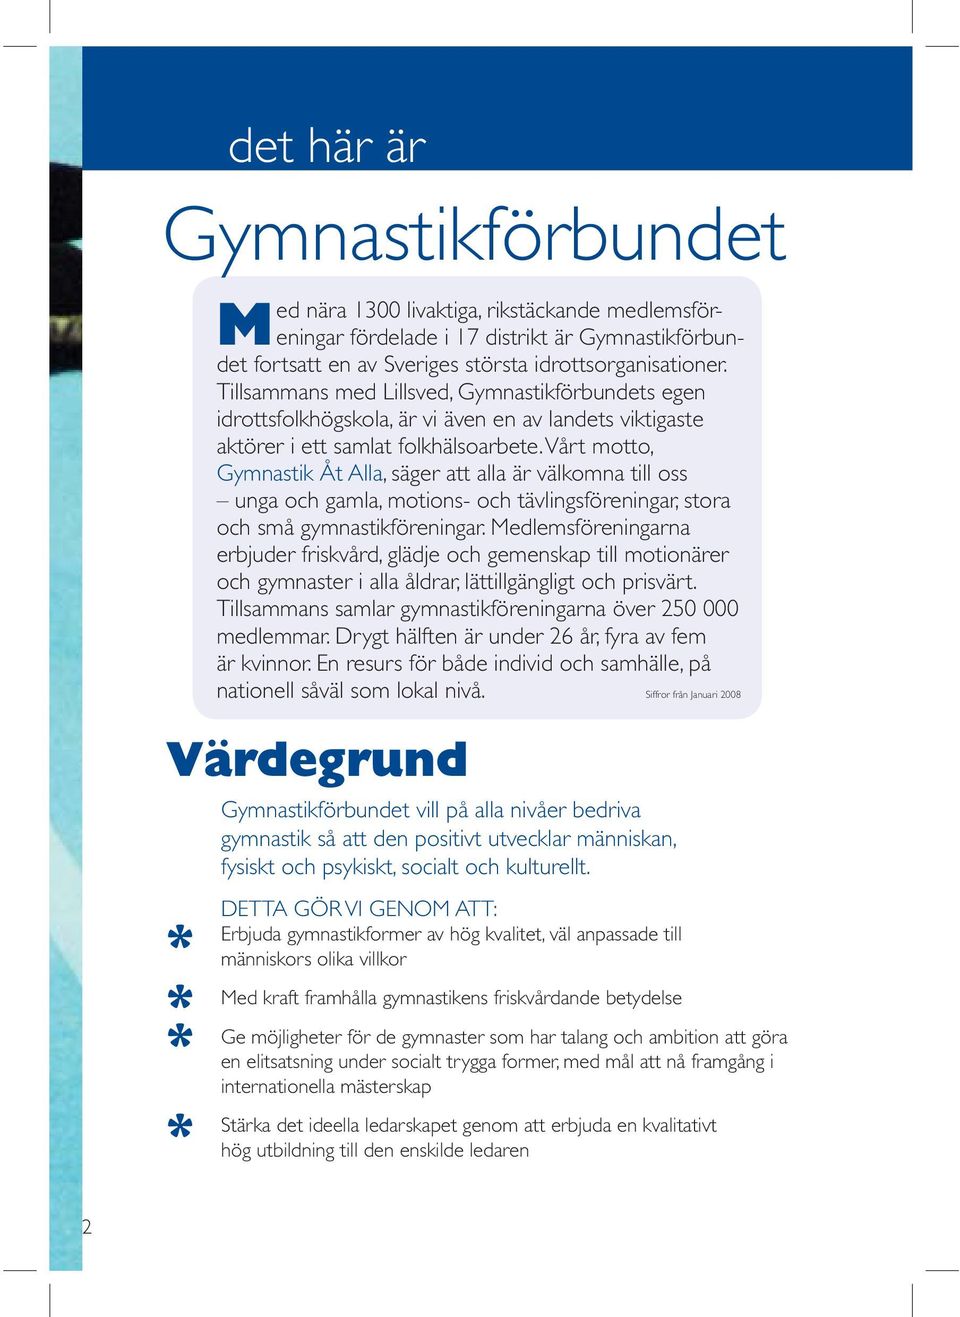 Vårt motto, Gymnastik Åt Alla, säger att alla är välkomna till oss unga och gamla, motions- och tävlingsföreningar, stora och små gymnastikföreningar.